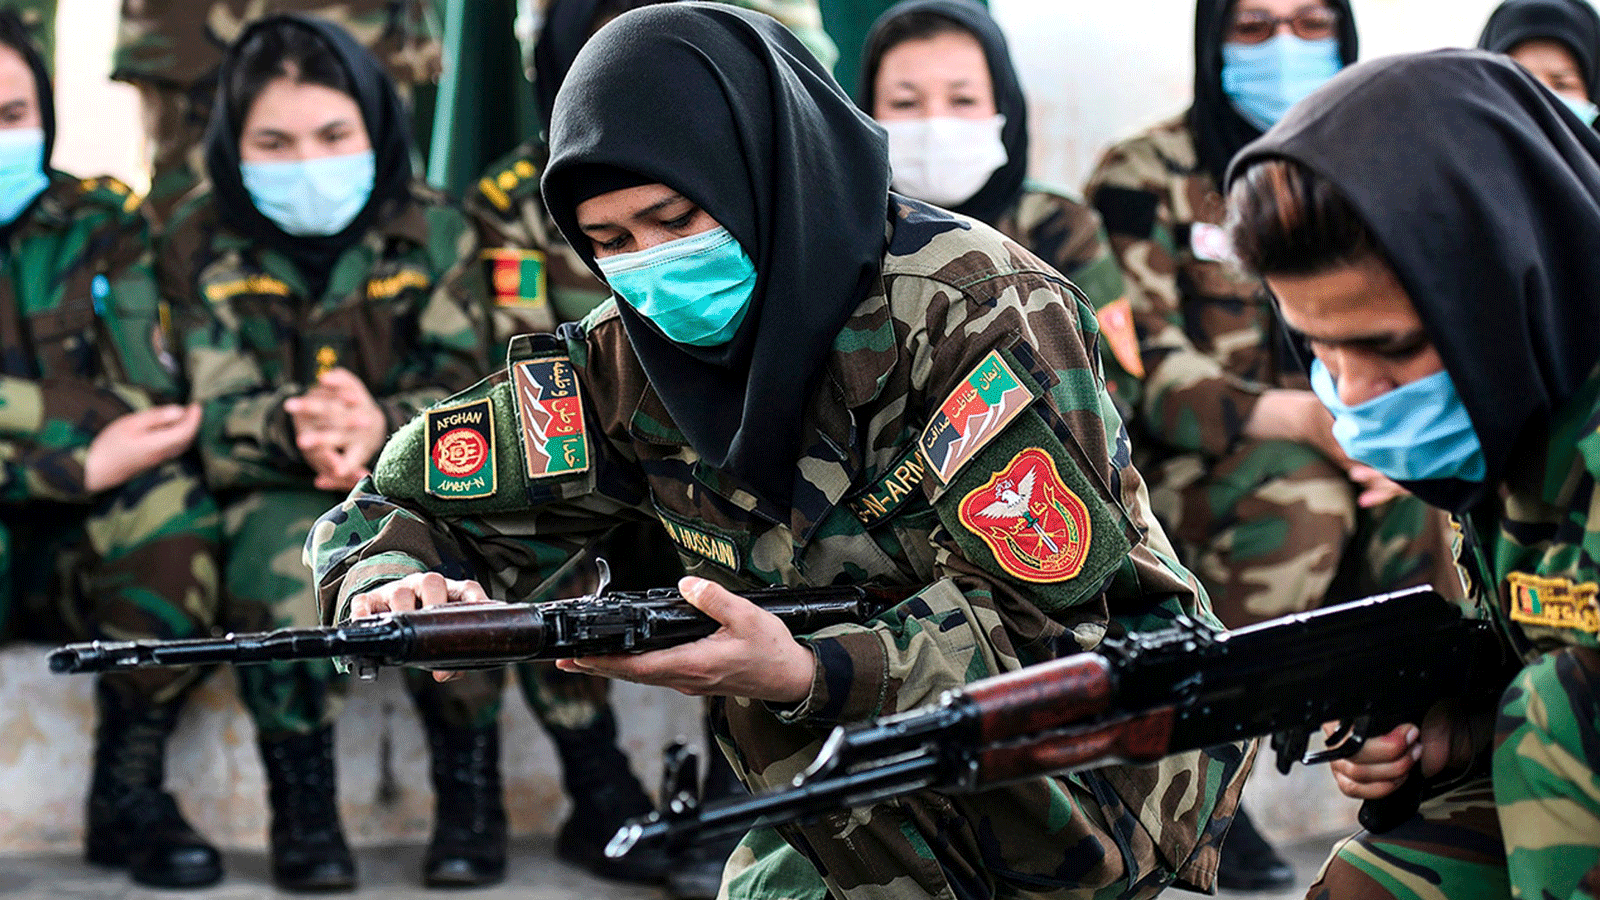 طالبات أفغانيات يتعاملن مع البنادق من طراز AK-47 خلال برنامج تدريبي في أكاديمية تدريب الضباط في تشيناي في 18 شباط/ فبراير 2021